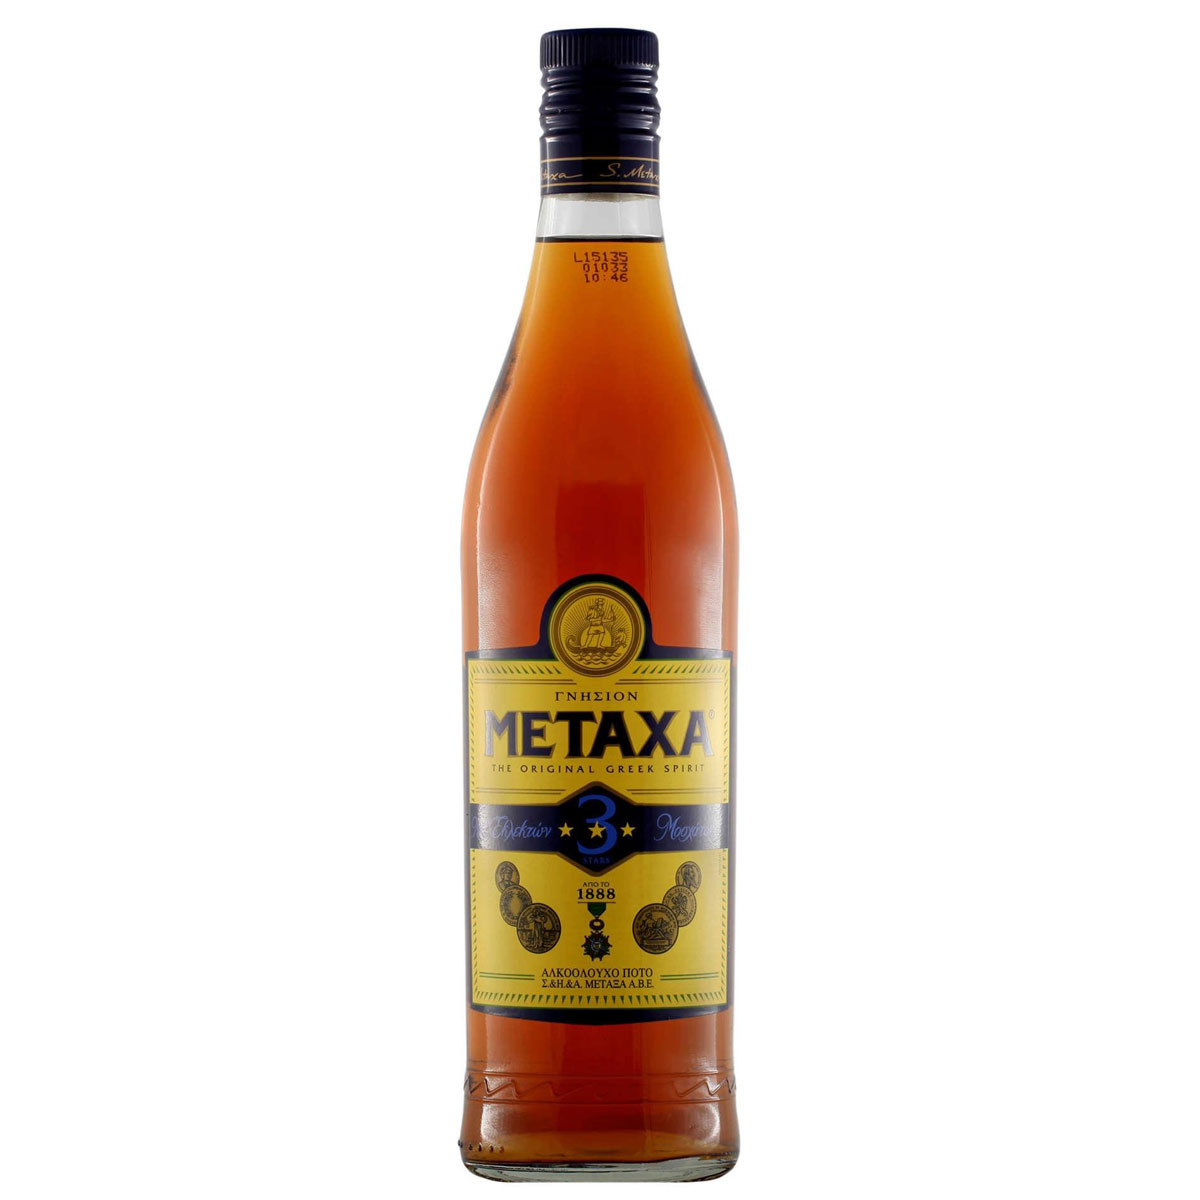 a bottle of metaxa brandy 3